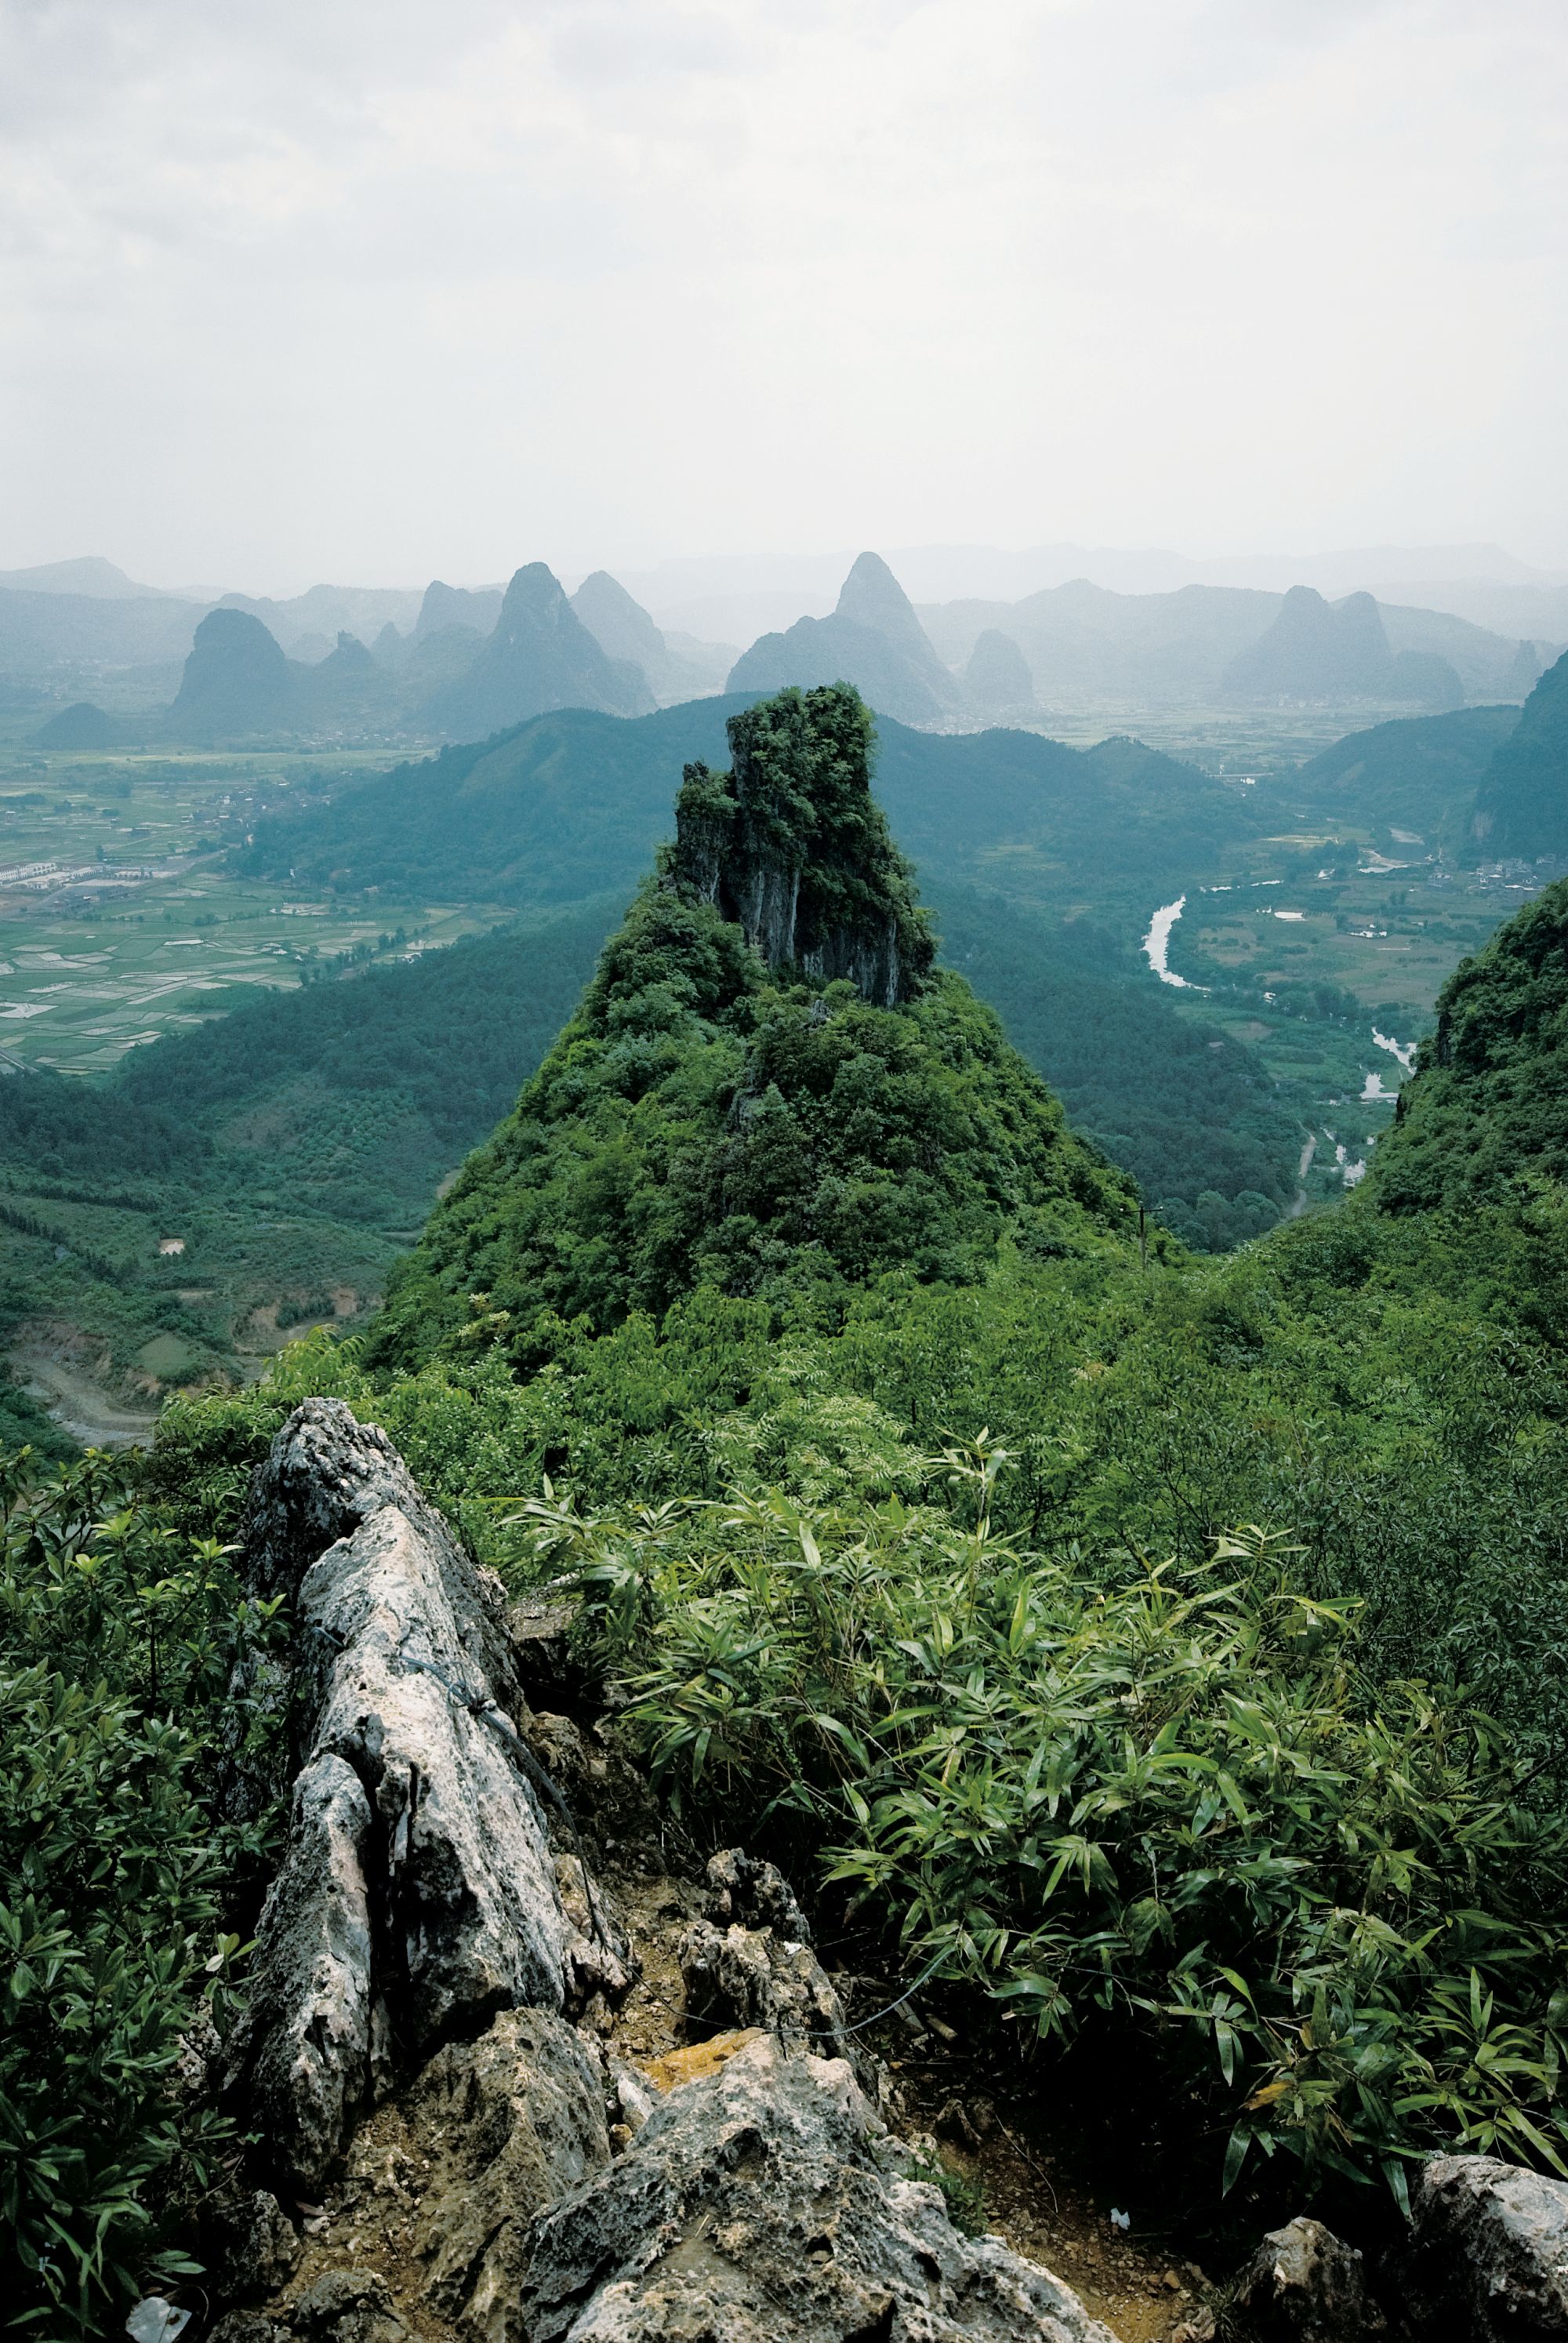 Guilin's unbeatable karst landscape. Photo: David Vetter